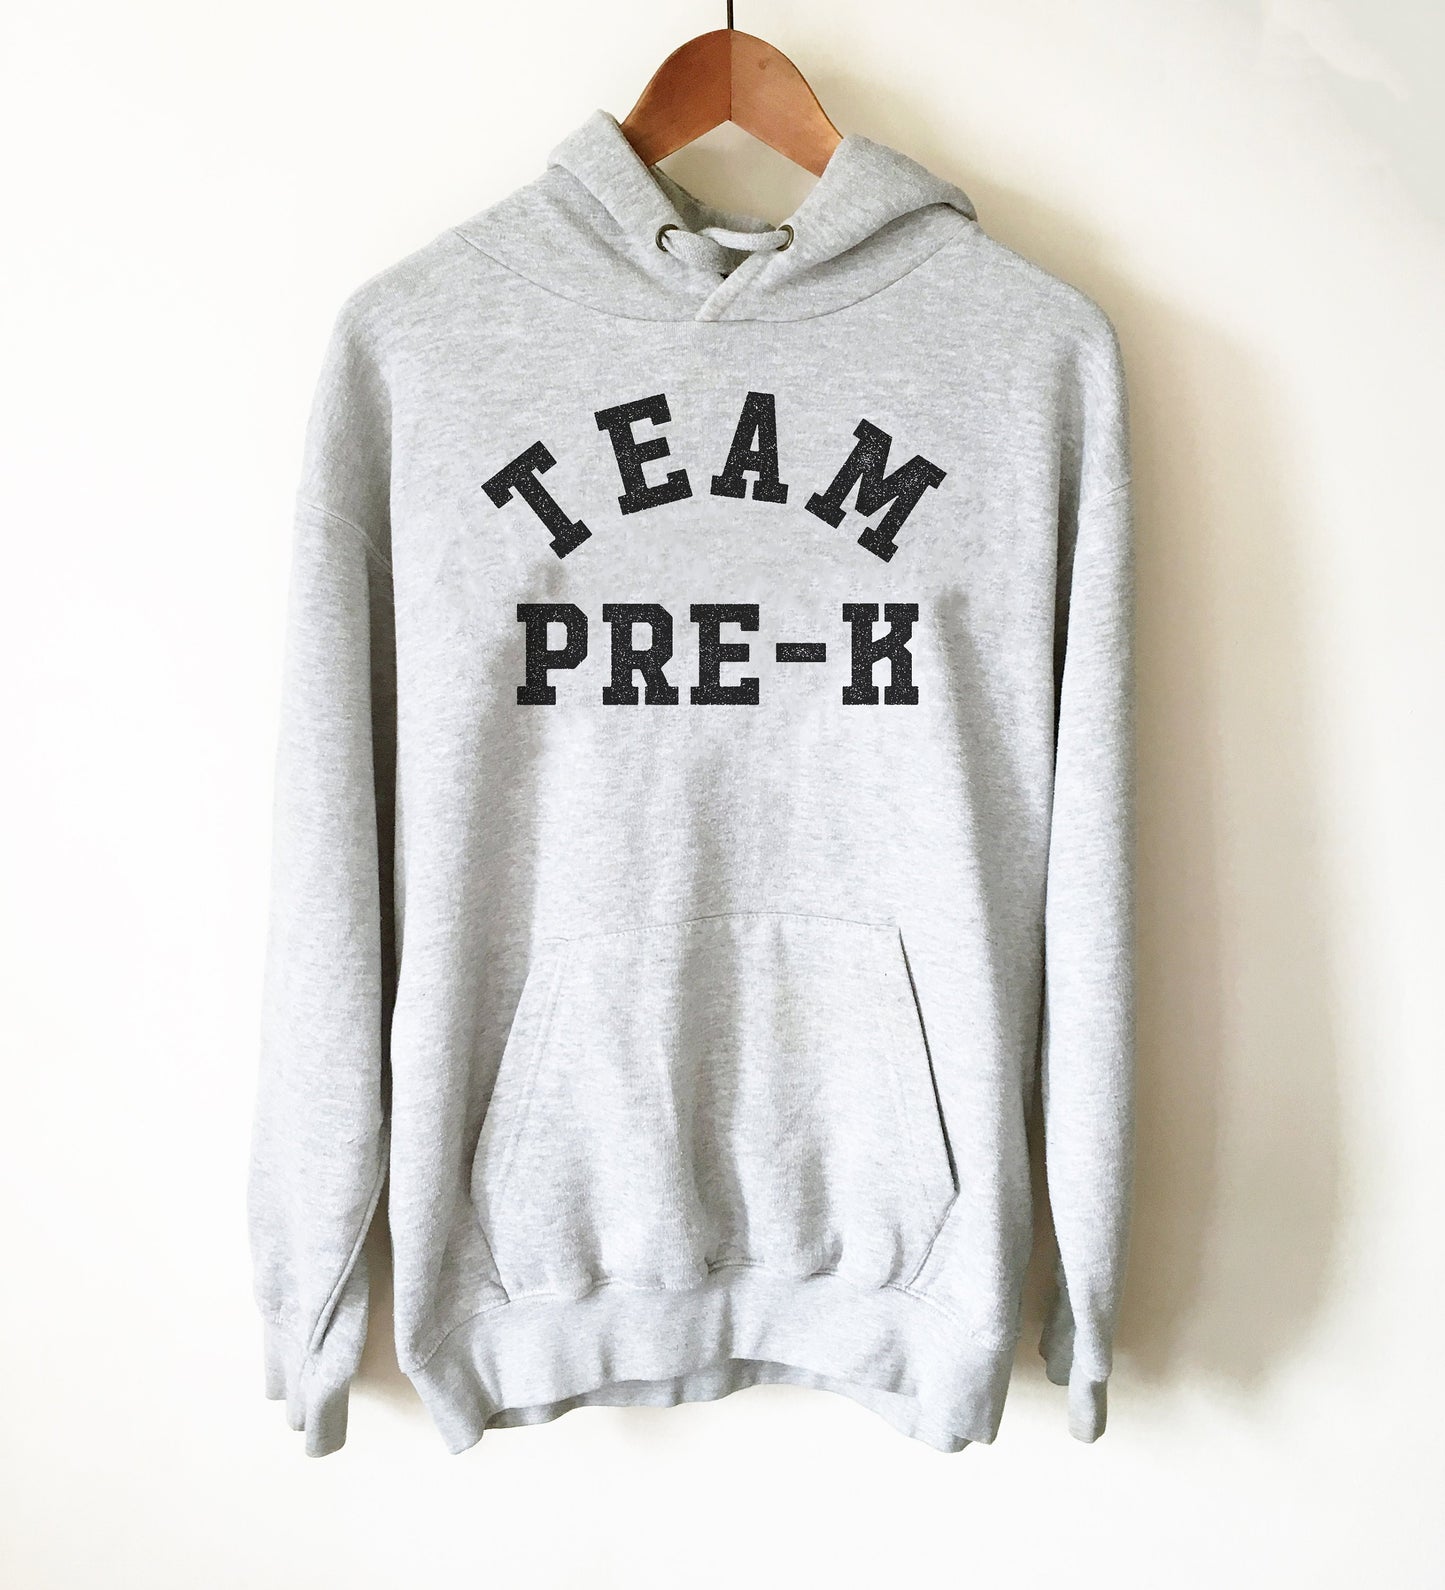 Team Pre-K Hoodie - Pre K Shirt, Pre K Gift, Kindergarten Shirt, Kindergarten Gift, Pre K Teacher Shirt, Kindergarten Teacher Shirt